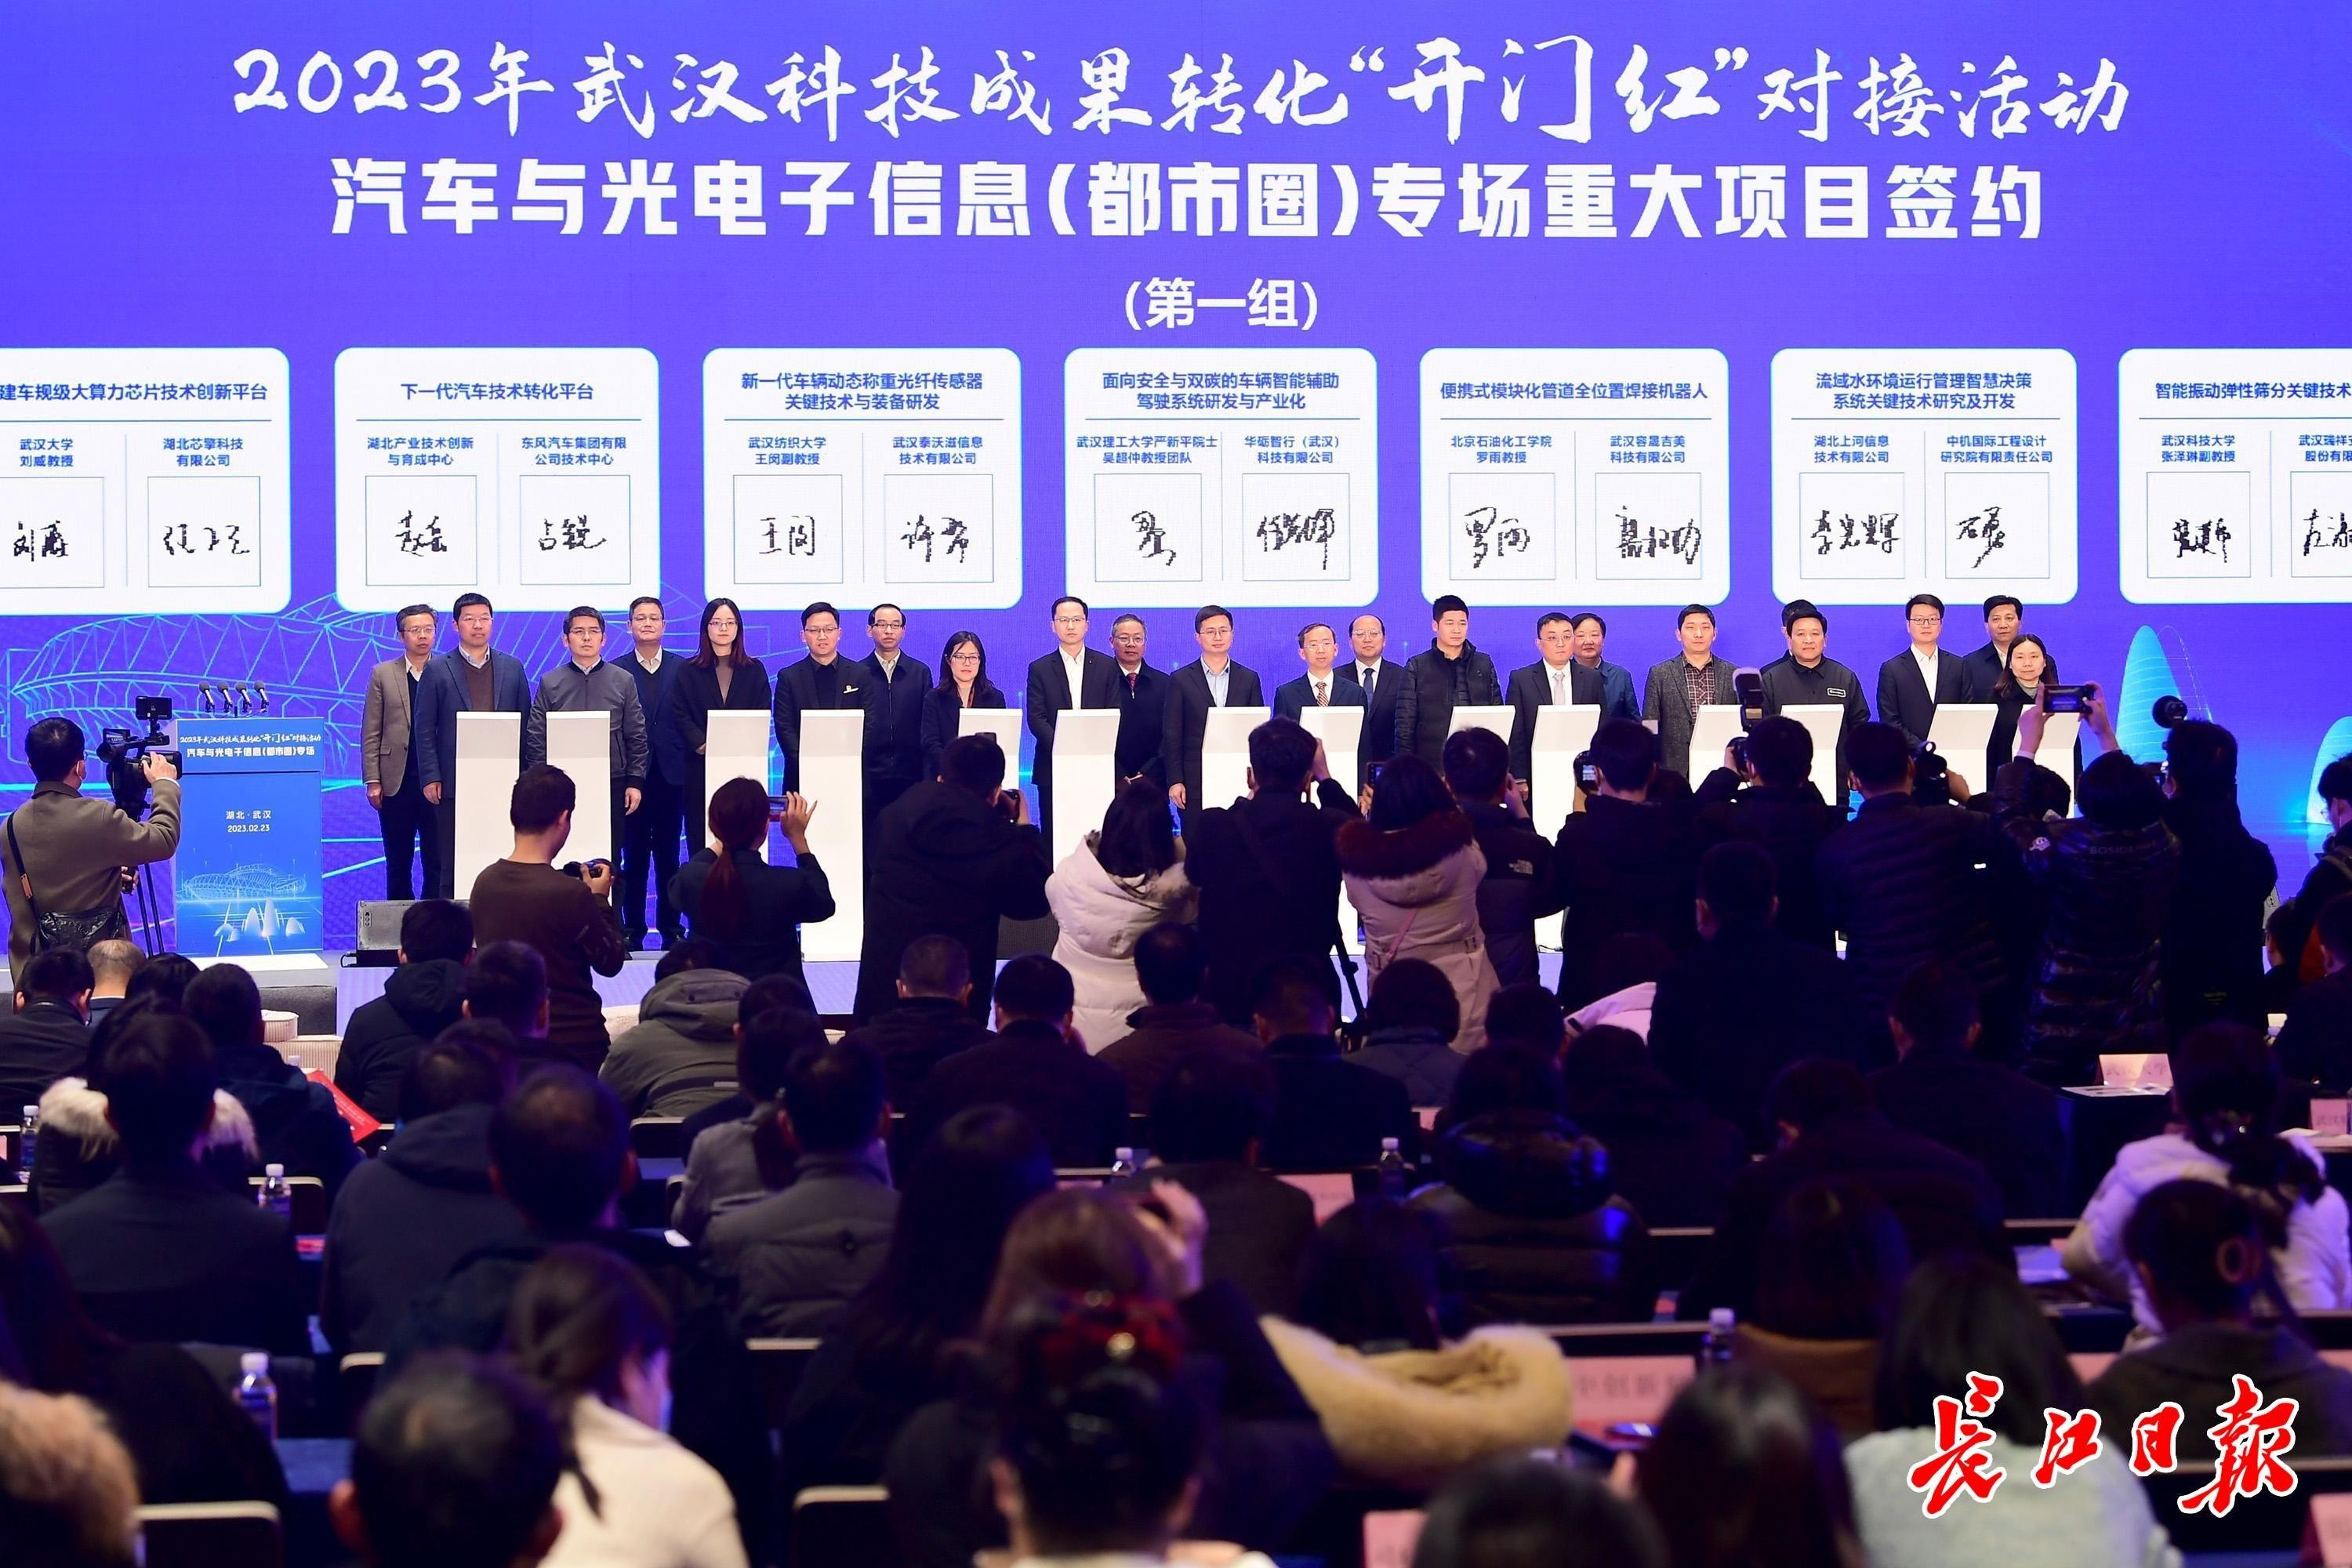 36个项目现场签约，全场签约金额超2亿元，武汉今年首场大型科技成果转化对接活动举办